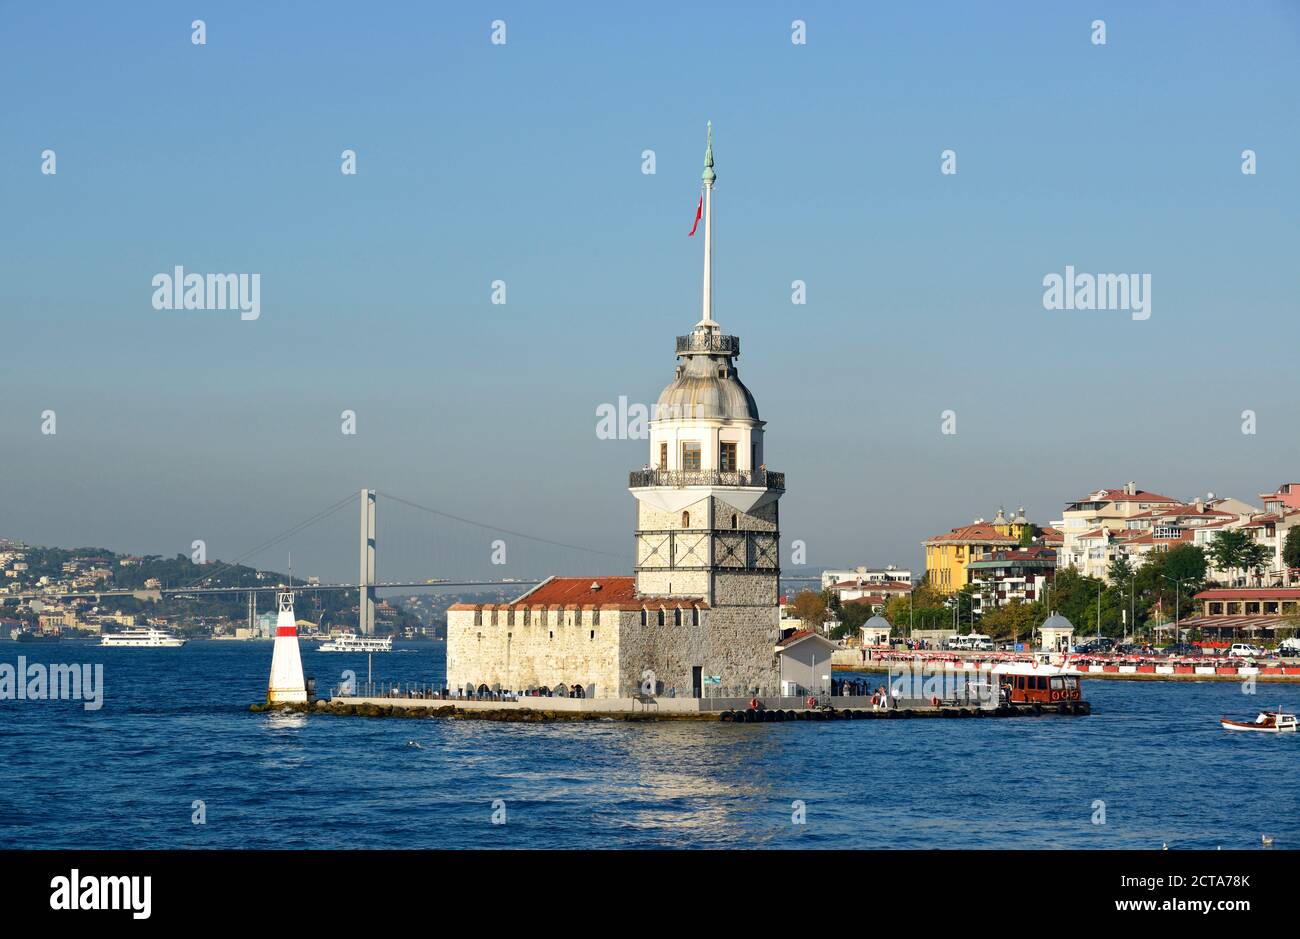 Turkey, Istanbul, Maiden's Tower in Bosphorus Stock Photo